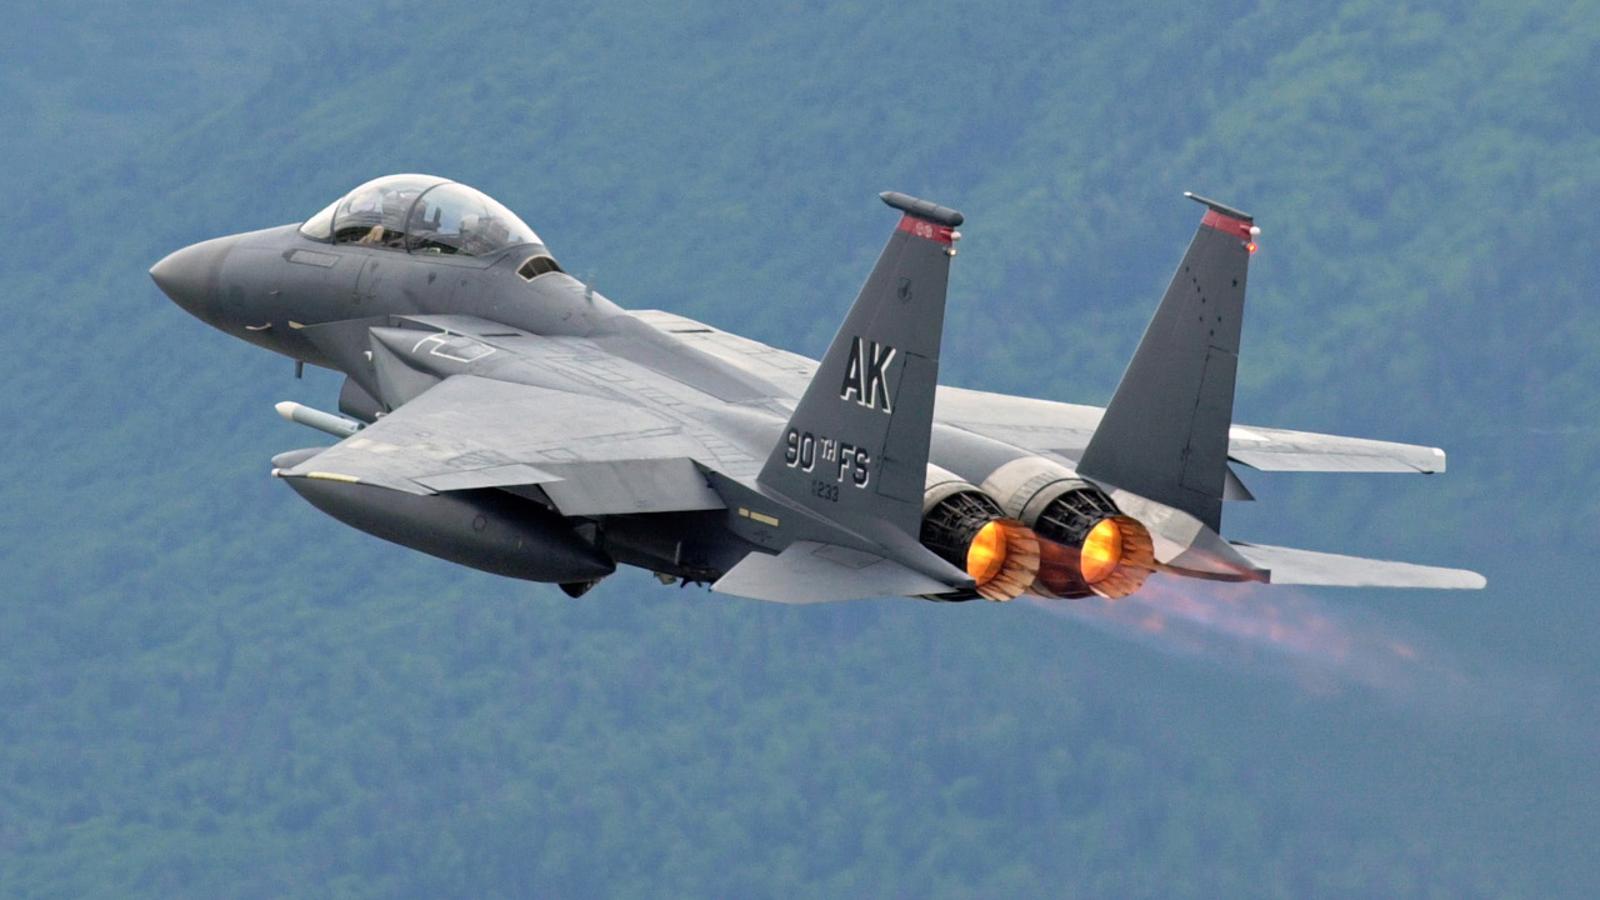 F-15 Eagle. El F-15 Eagle es capaz de alcanzar una velocidad máxima de unos 2,5 Mach a una altura de 60.000 pies